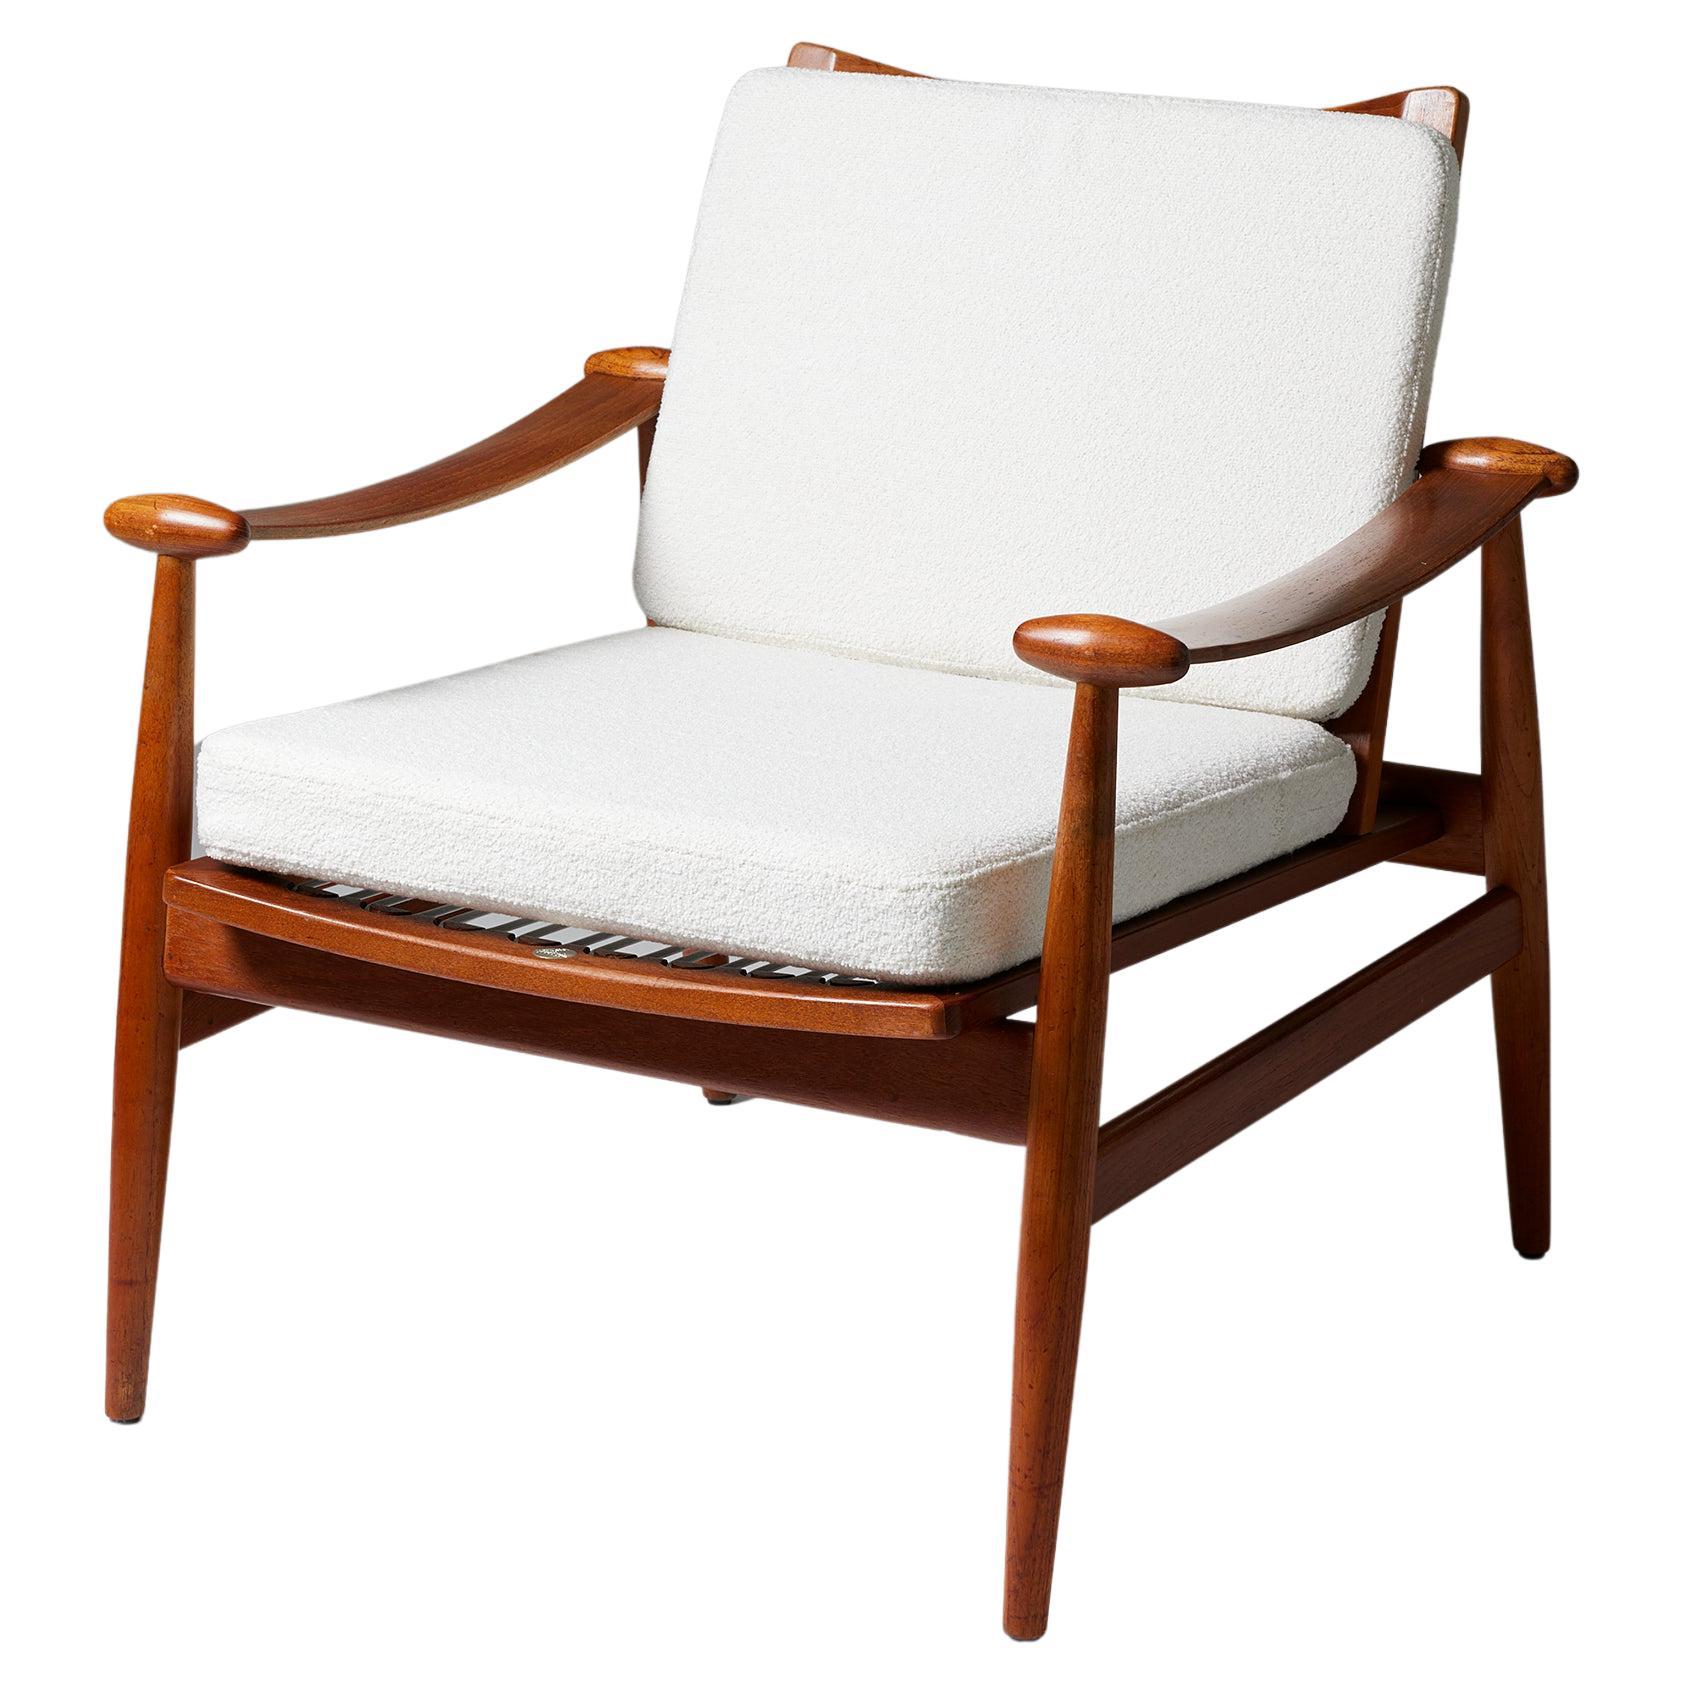 Chair ‘Spade’ Model FD 133 Designed by Finn Juhl for Frankrike & Søn, Denmark